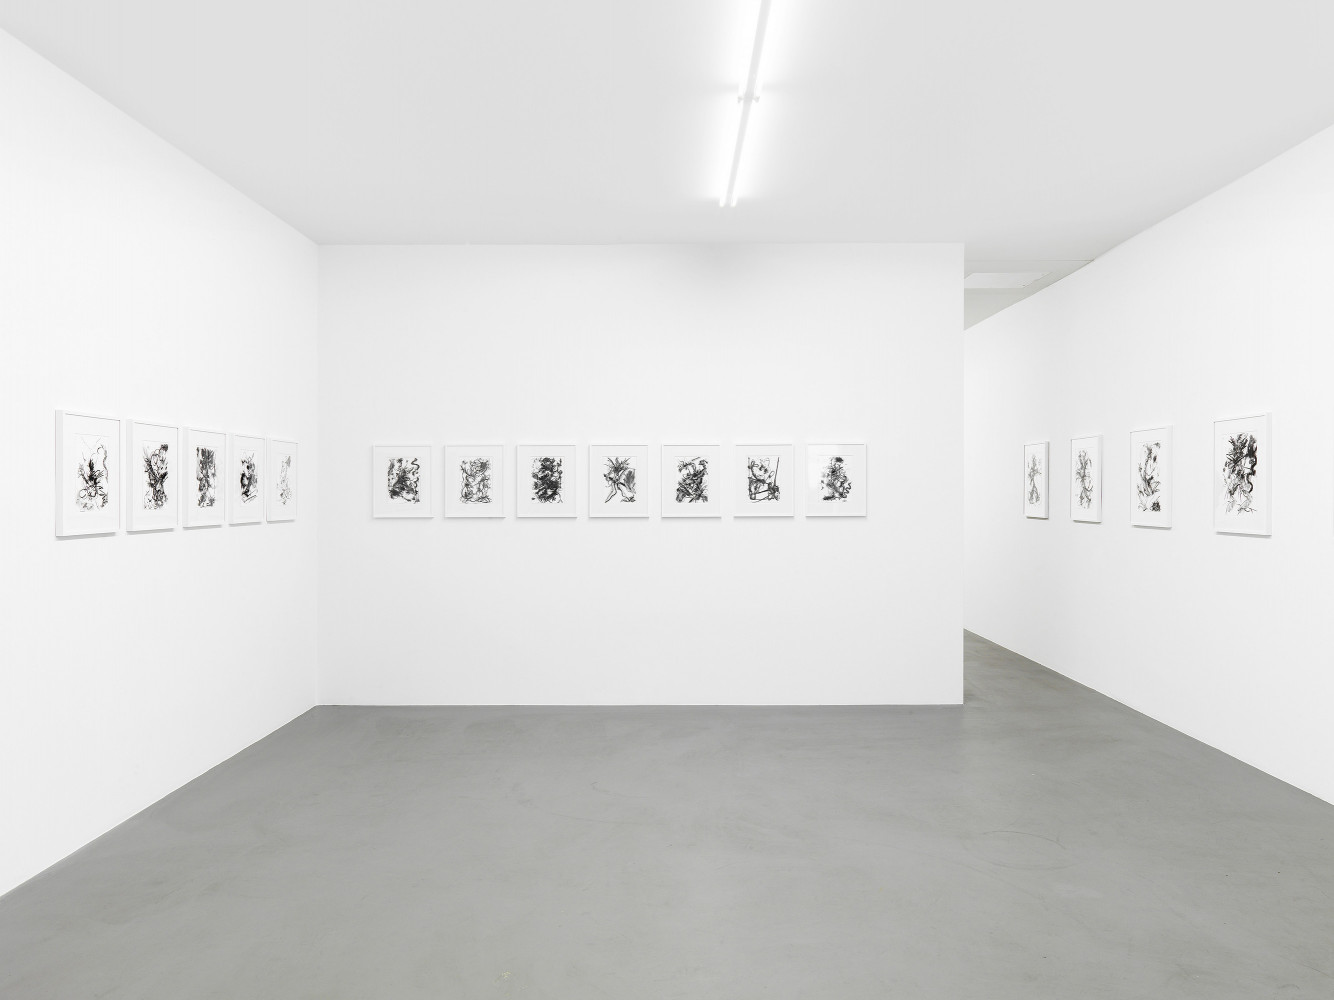 Fiona Rae, ‘Zeichnungen’, Installation view, Buchmann Galerie, 2014